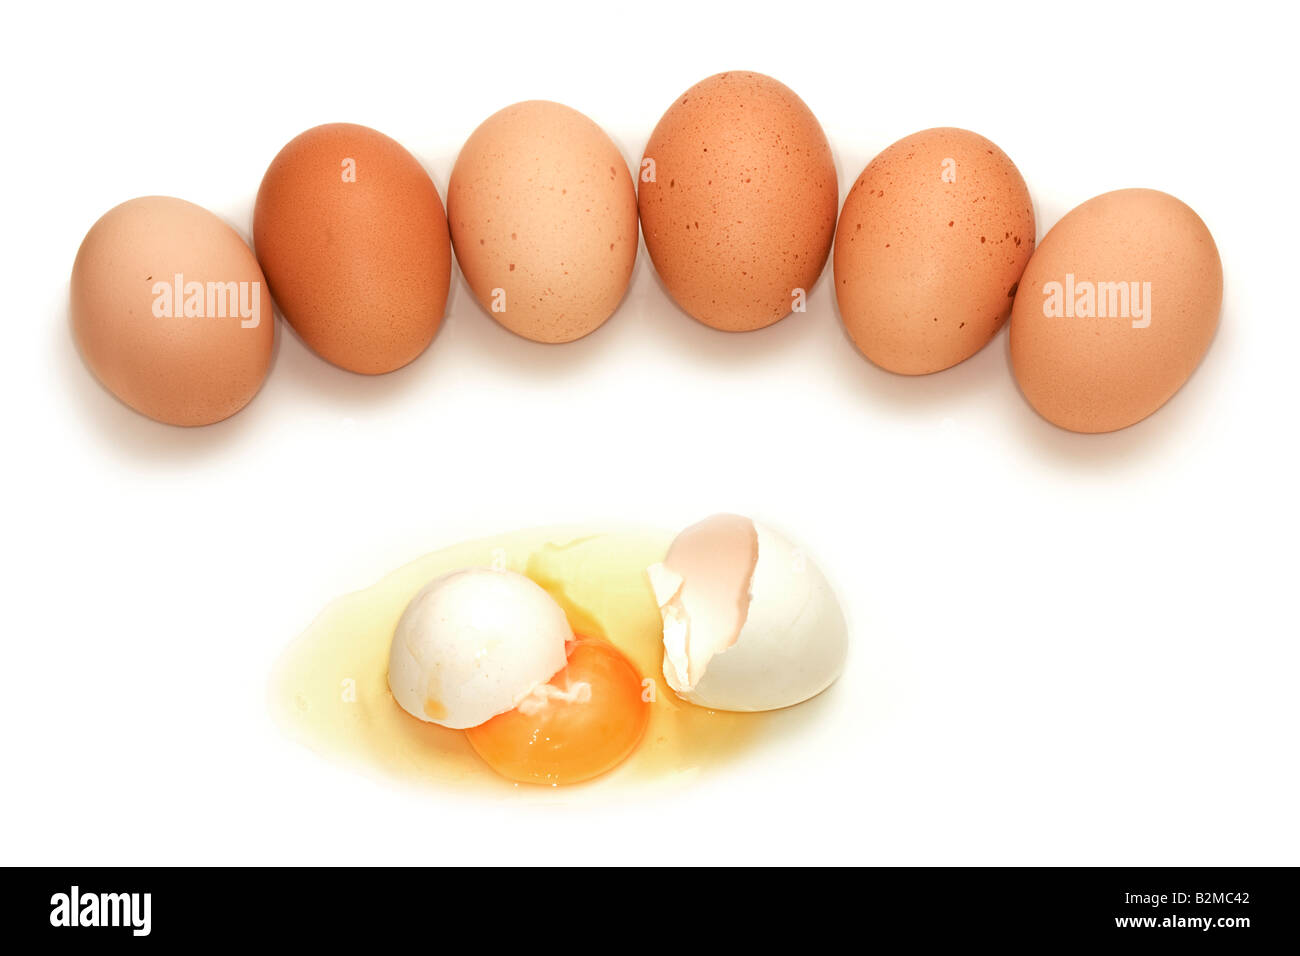 Los huevos que muestra el concepto de racismo asesinato la violencia étnica o mobbing Foto de stock